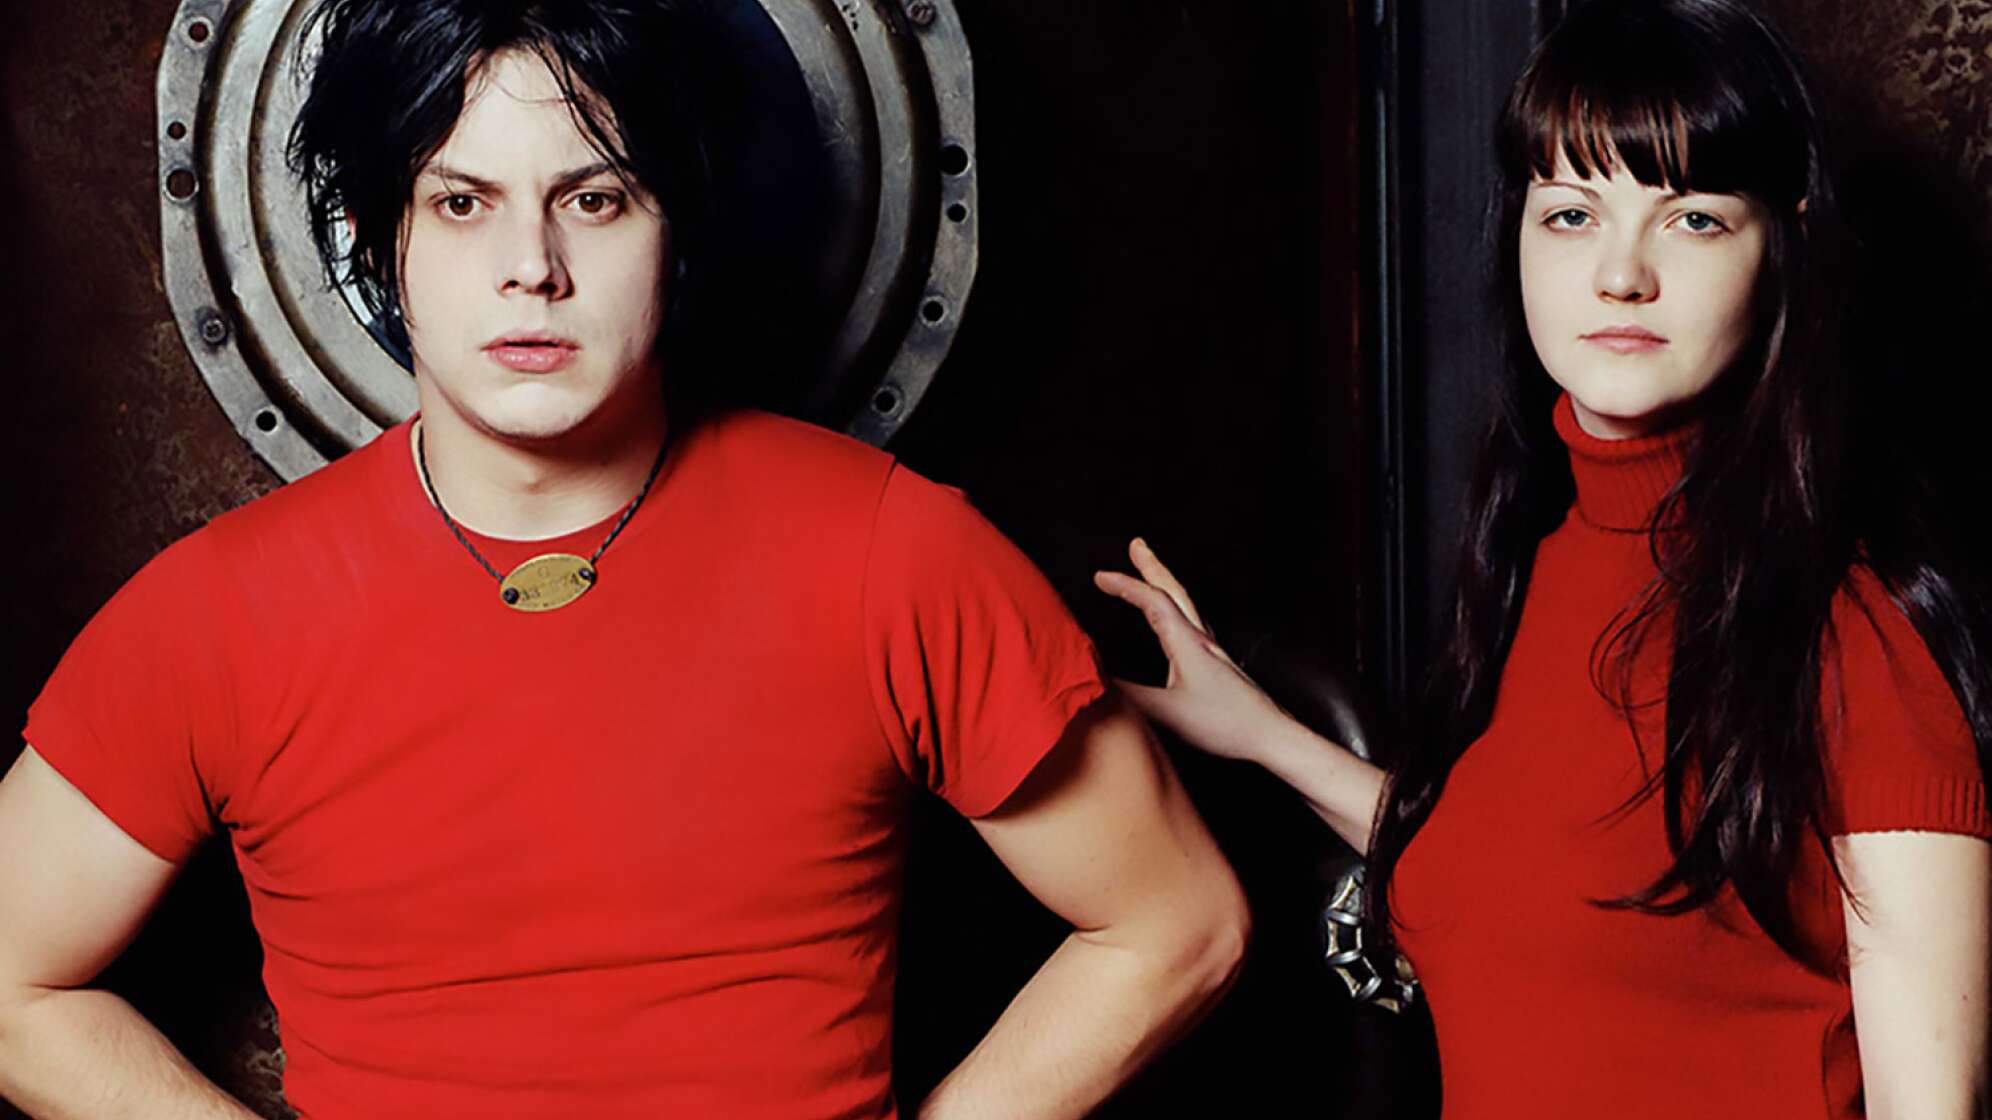 Jack und Meg White in rotem Shirt vor schwarzem Hintergrund